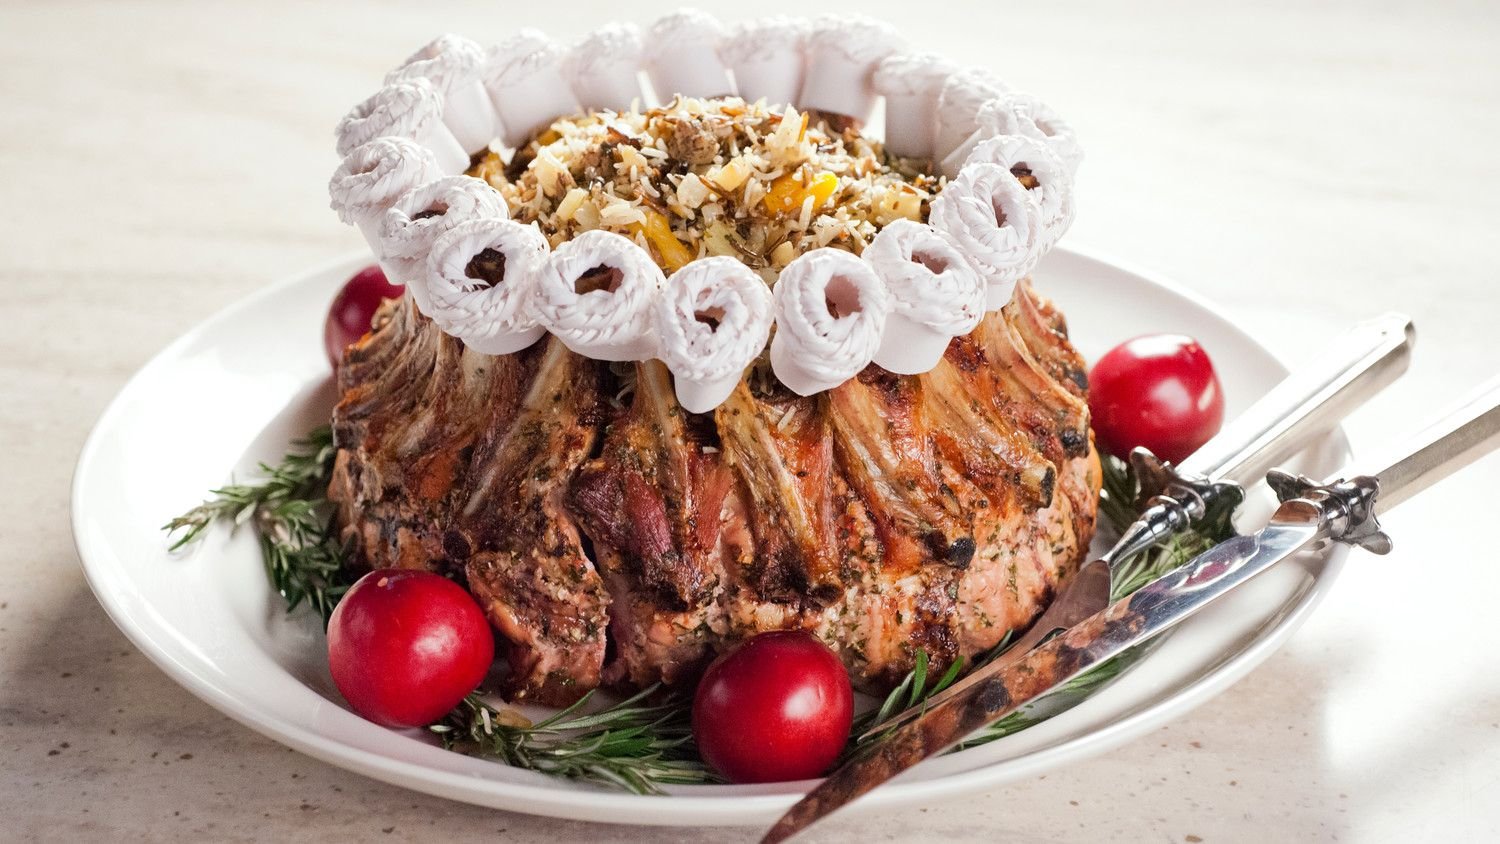 Праздничные блюда из мяса: сытно, красиво, вкусно и оригинально
праздничные блюда из мяса: сытно, красиво, вкусно и оригинально